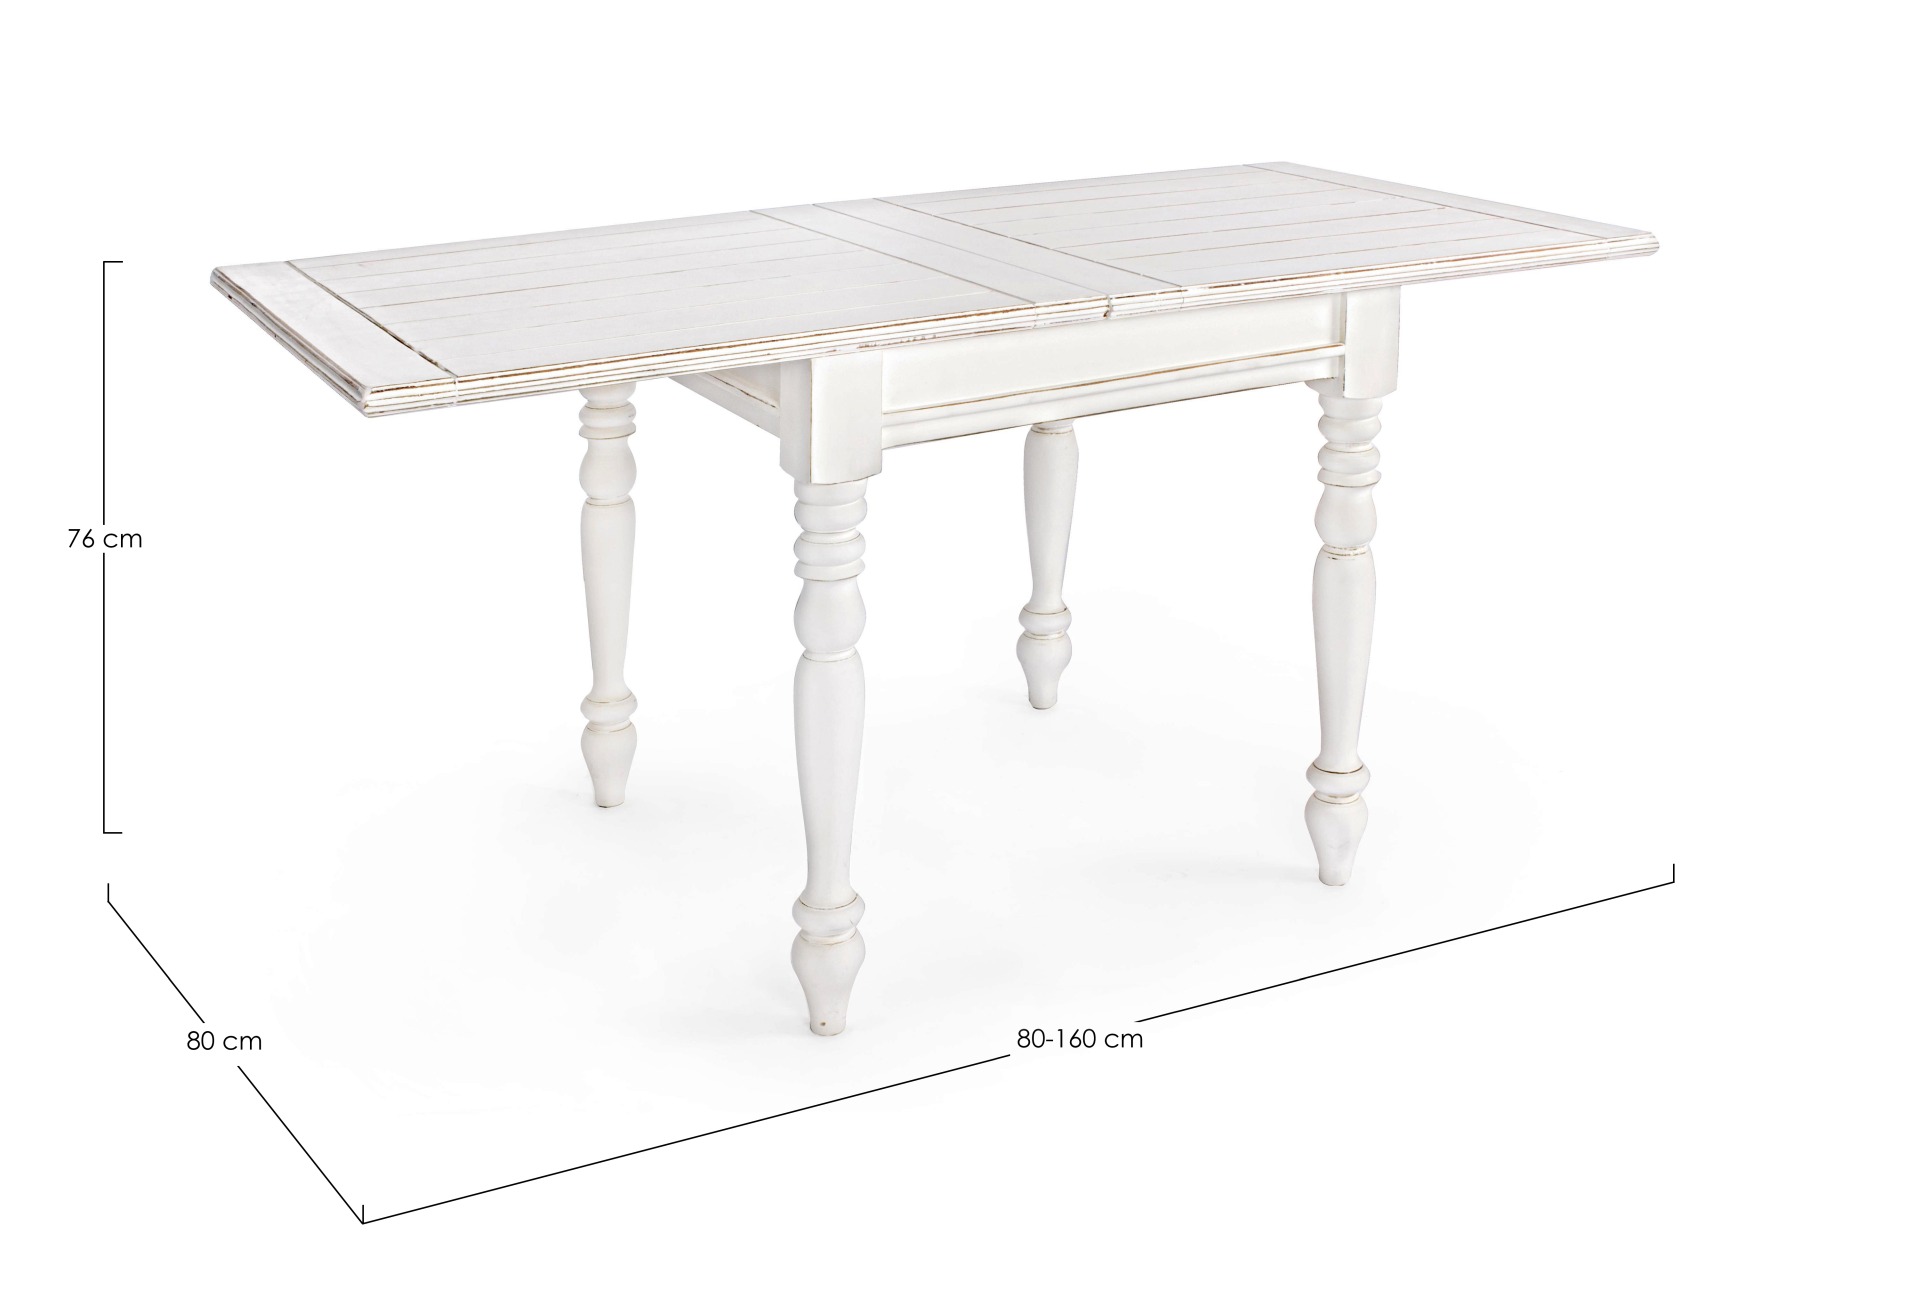 Der Esstisch Colette überzeugt mit seinem klassischem Design. Gefertigt wurde er aus Mangoholz, welches einen weißen Farbton besitzt. Das Gestell des Tisches ist auch aus MAngoholz. Der Tisch ist ausziehbar von einer Breite von 80 cm auf 160 cm.